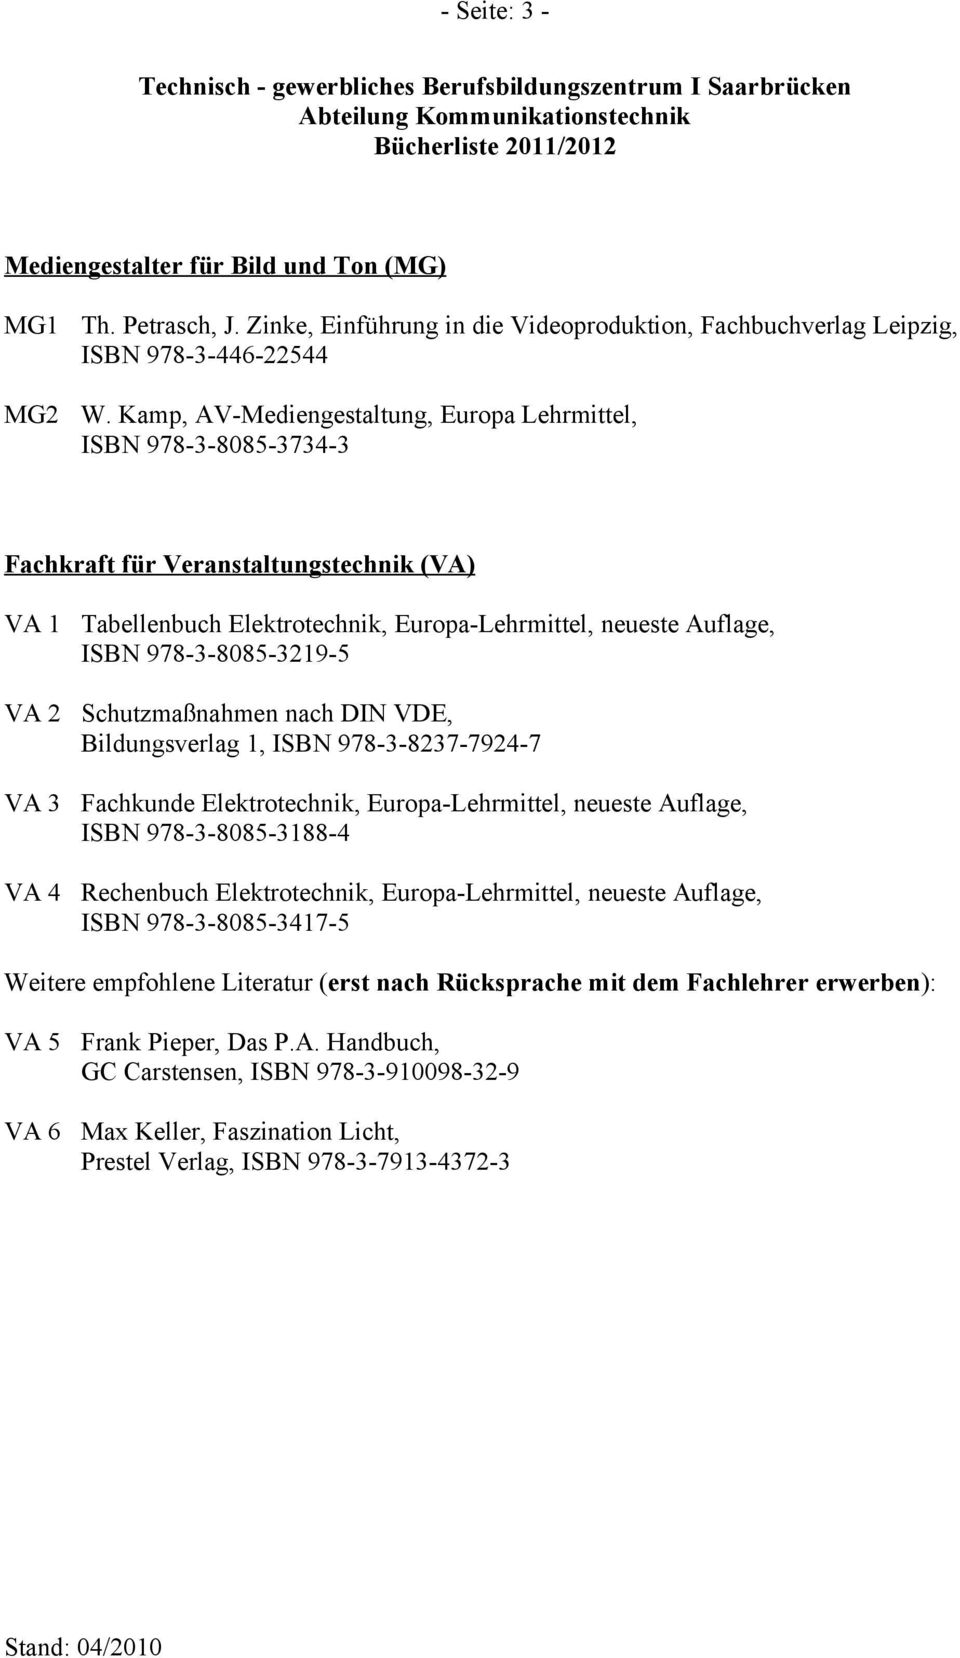 978-3-8085-3219-5 VA 2 Schutzmaßnahmen nach DIN VDE, Bildungsverlag 1, ISBN 978-3-8237-7924-7 VA 3 Fachkunde Elektrotechnik, Europa-Lehrmittel, neueste Auflage, ISBN 978-3-8085-3188-4 VA 4 Rechenbuch